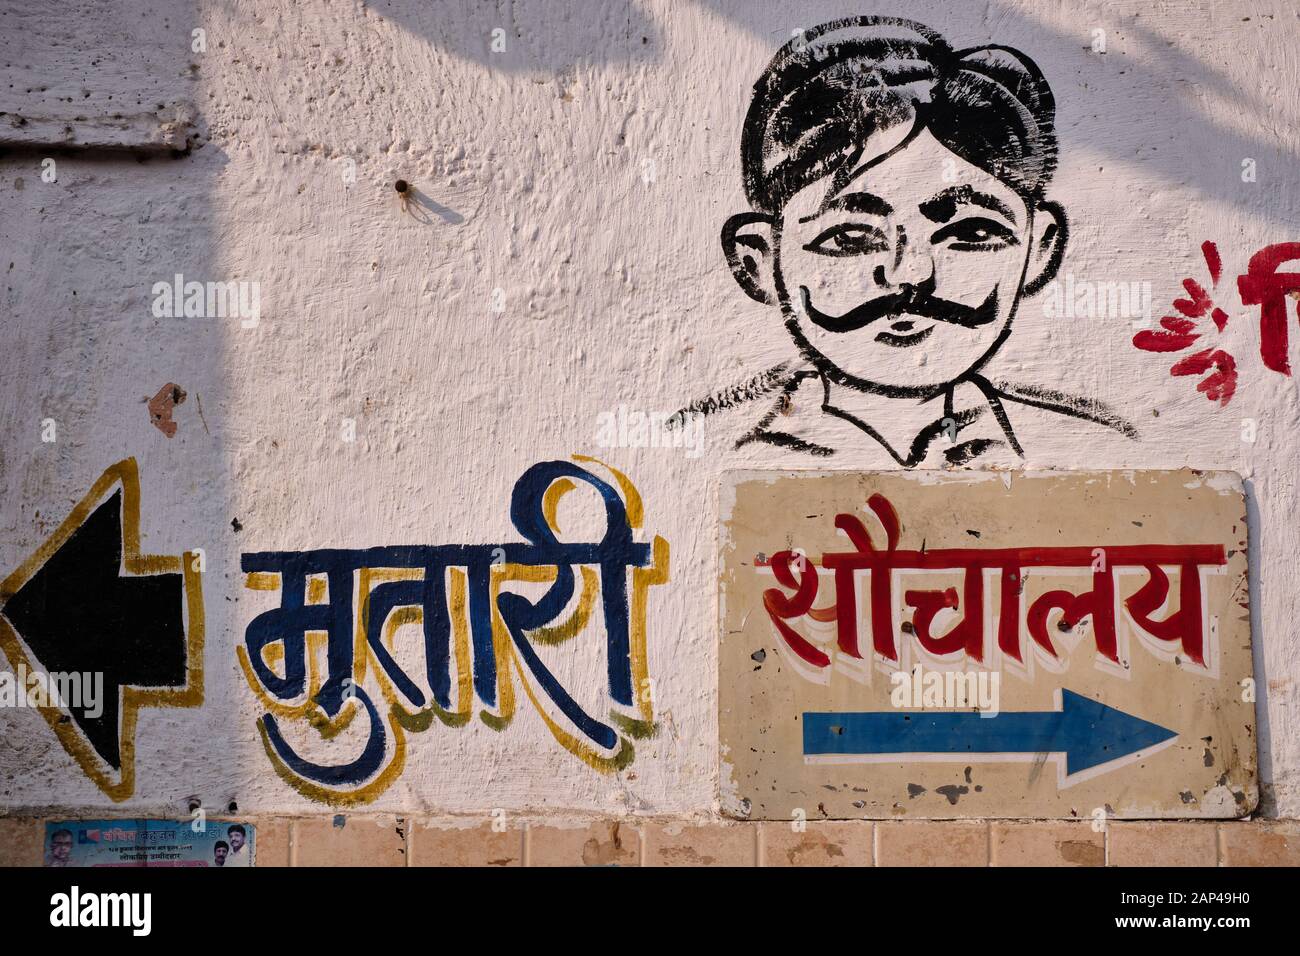 Ein Gemälde an der Wand auf einer männertoilette in Mumbai, Indien, zeigt auf das Urinal auf der linken Seite und die toilette für "größeres Geschäft" auf der rechten Seite Stockfoto